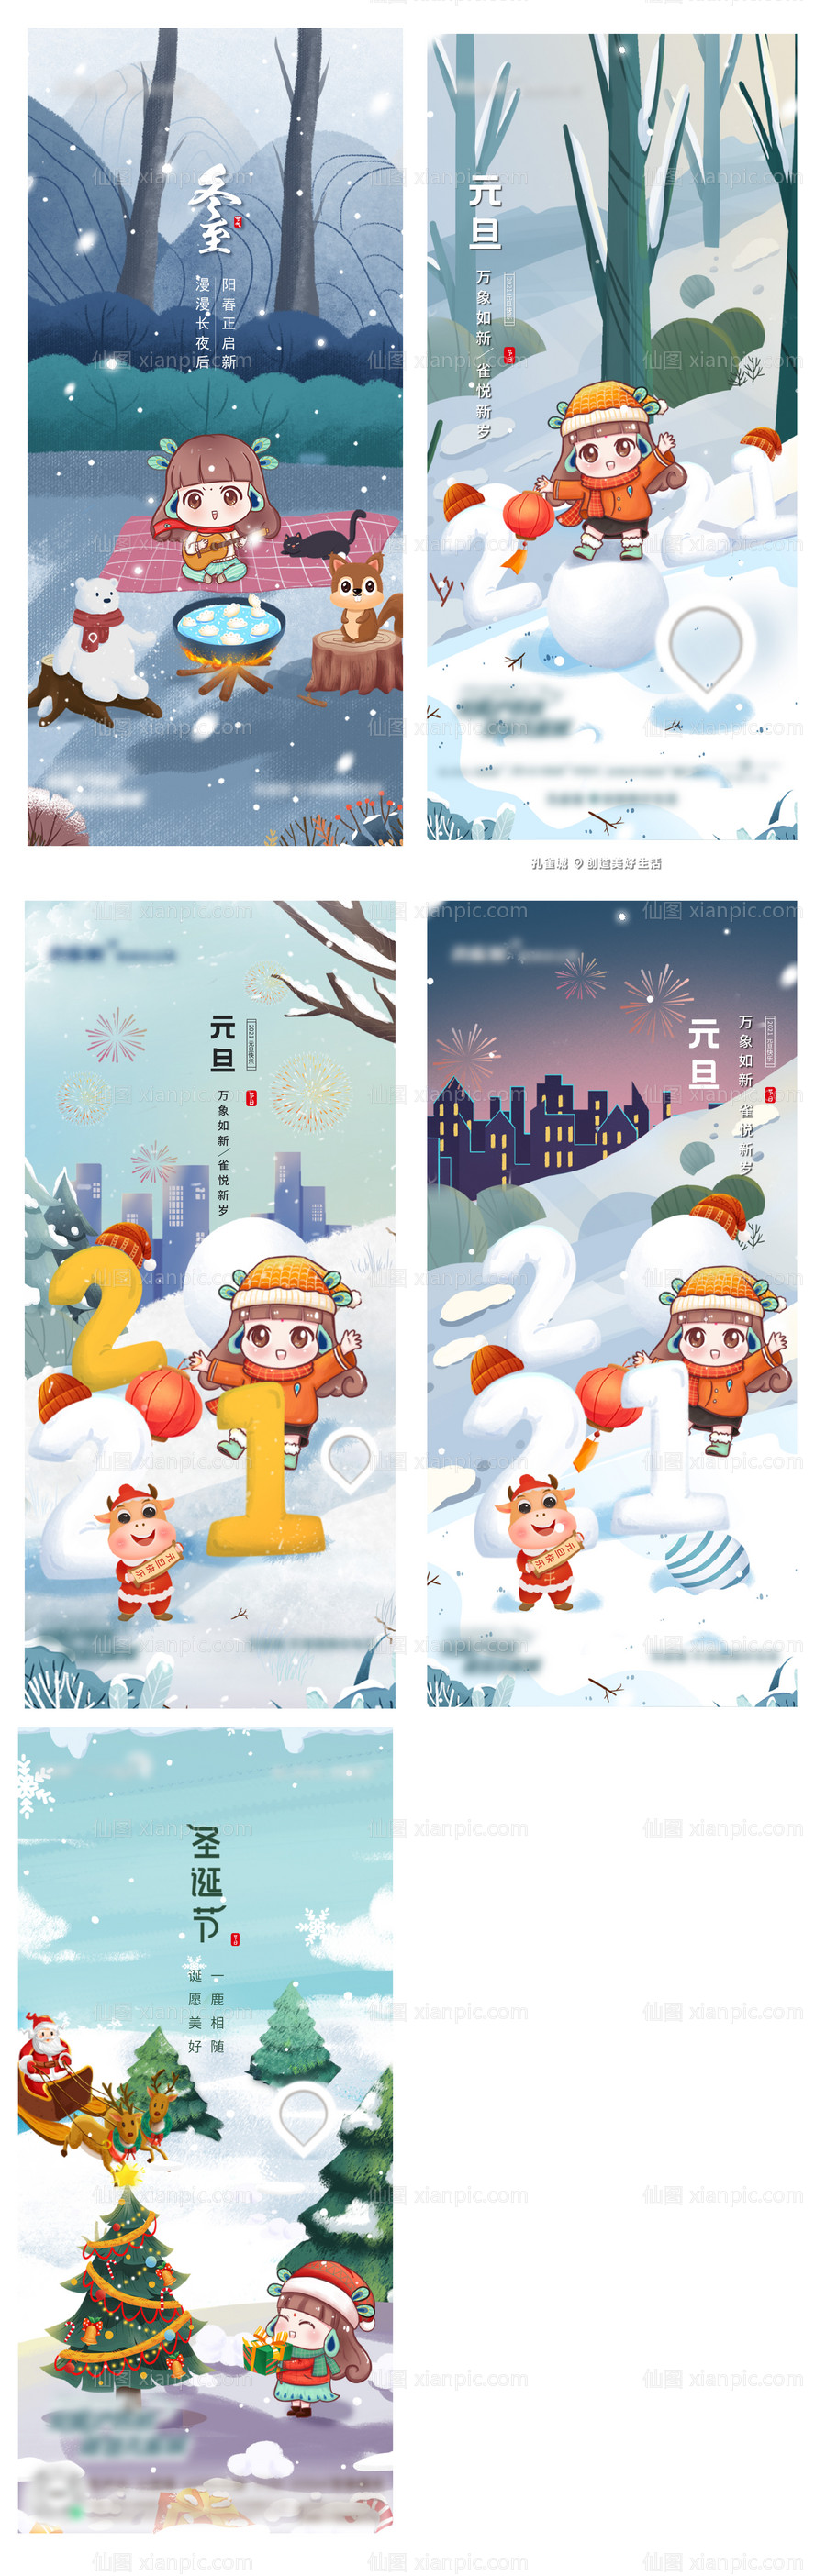 素材乐-冬至元旦圣诞节海报